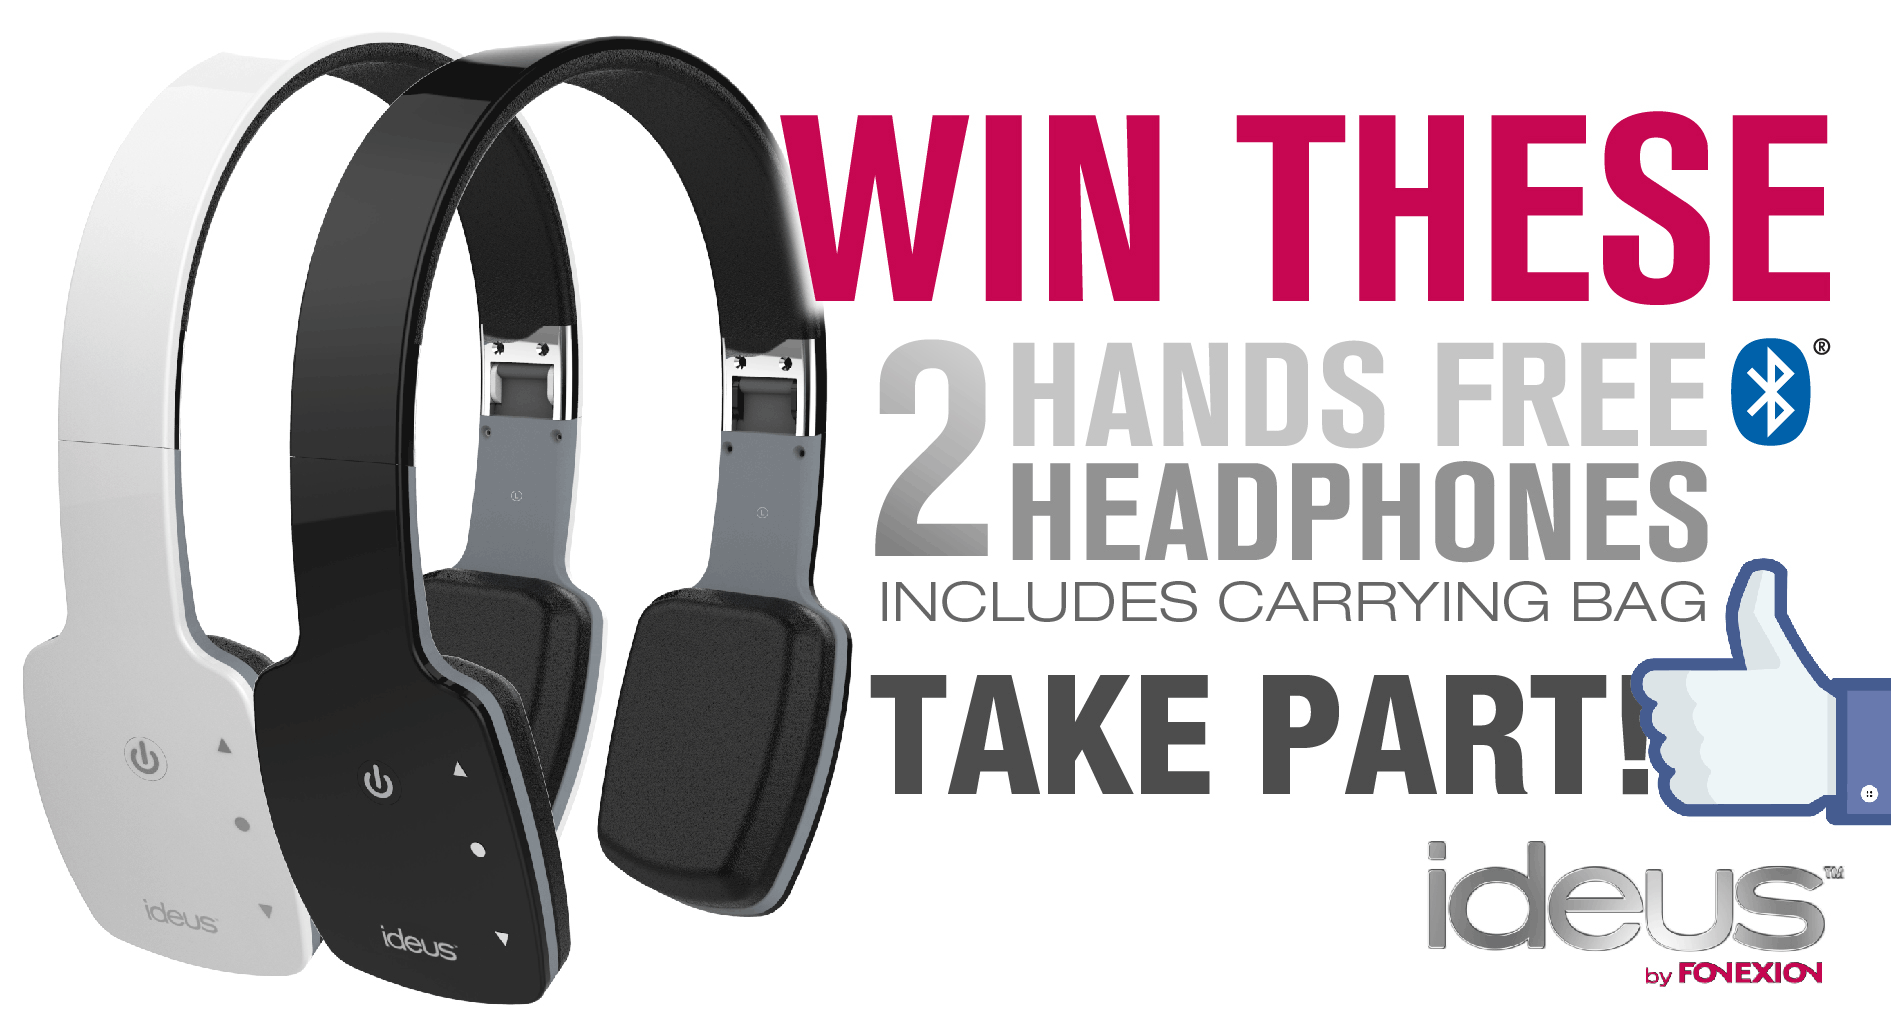 Win 2 hands free headphones!